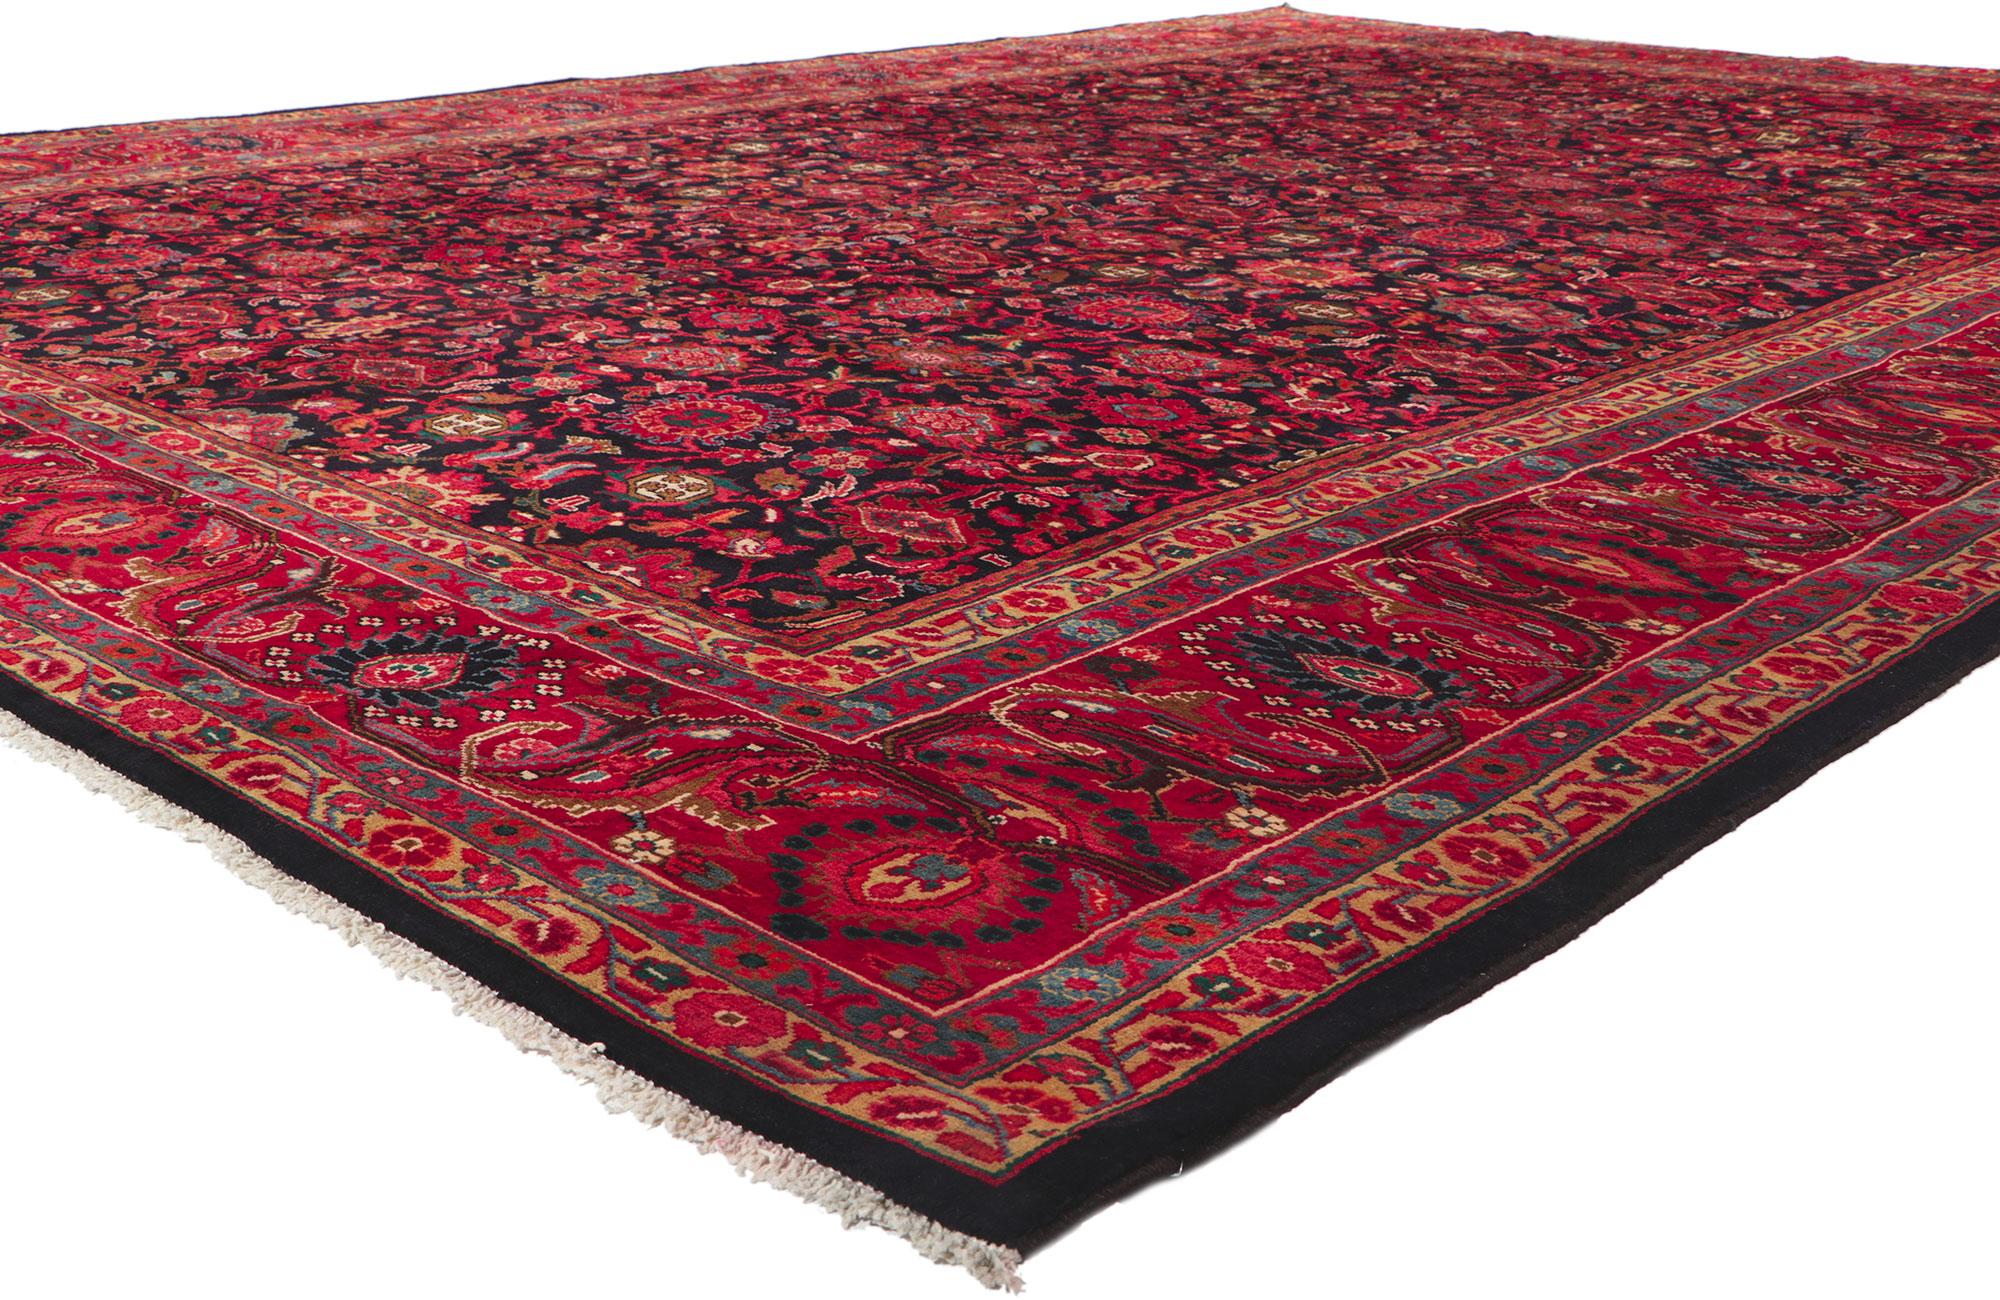 61192 Vintage Persischer Malayer Teppich, 10'07 x 13'11. Dieser handgeknüpfte persische Malayer-Teppich aus Wolle im Vintage-Stil besticht durch seine betörende Schönheit und seine reichen Juwelentöne. Das abgewetzte tintenblaue Feld ist mit einem